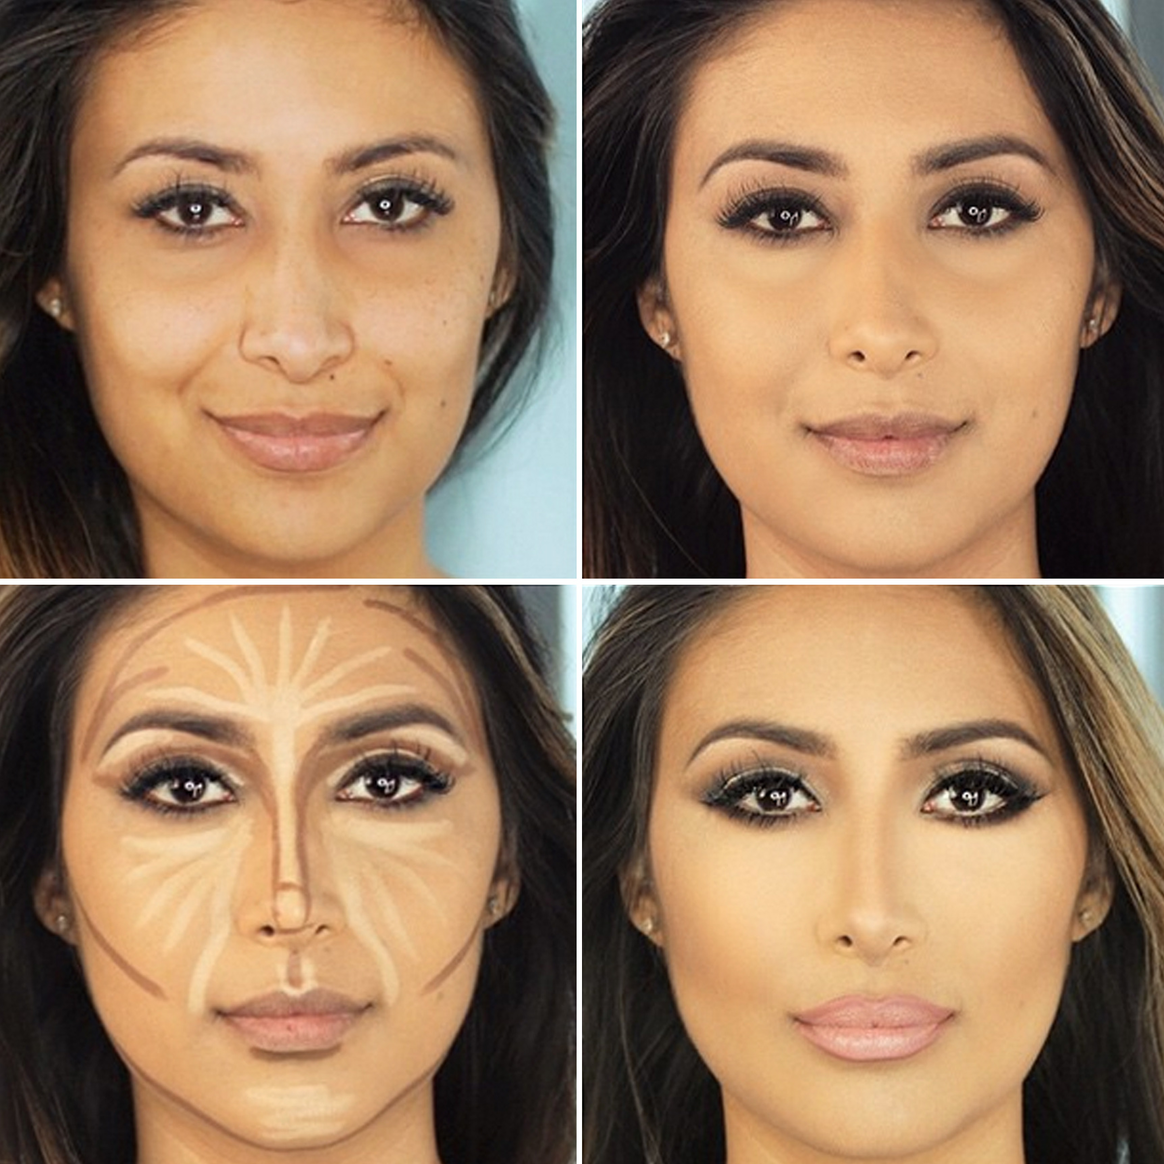 Как уменьшить нос макияжем - зрительно. что нужно для уменьшения носа макияжем, фото и видео